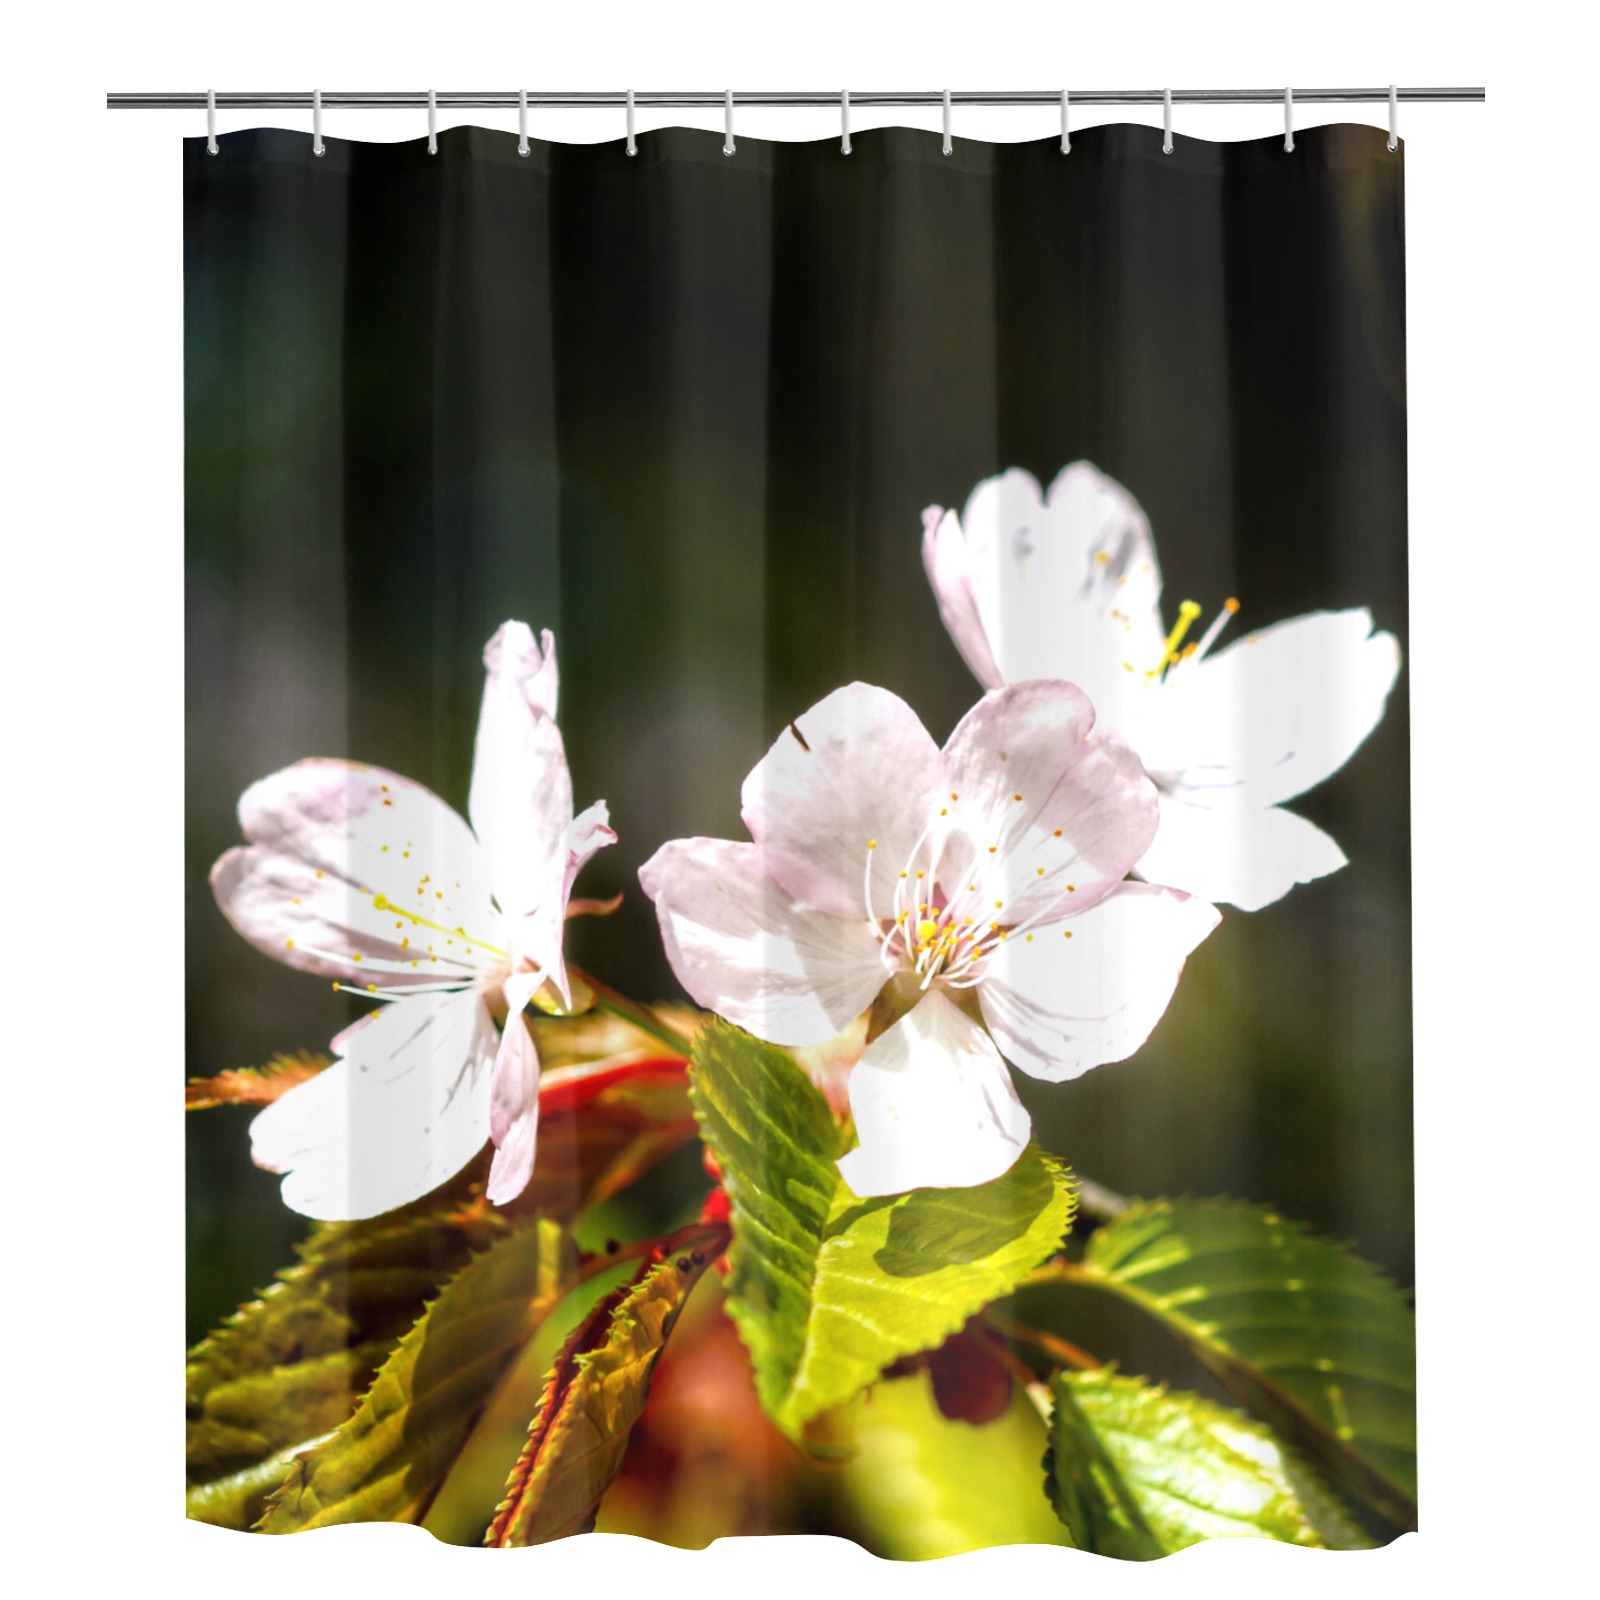 Sakura flowers enjoy sunshine. Hanami season magic Shower Curtain 72"x84"